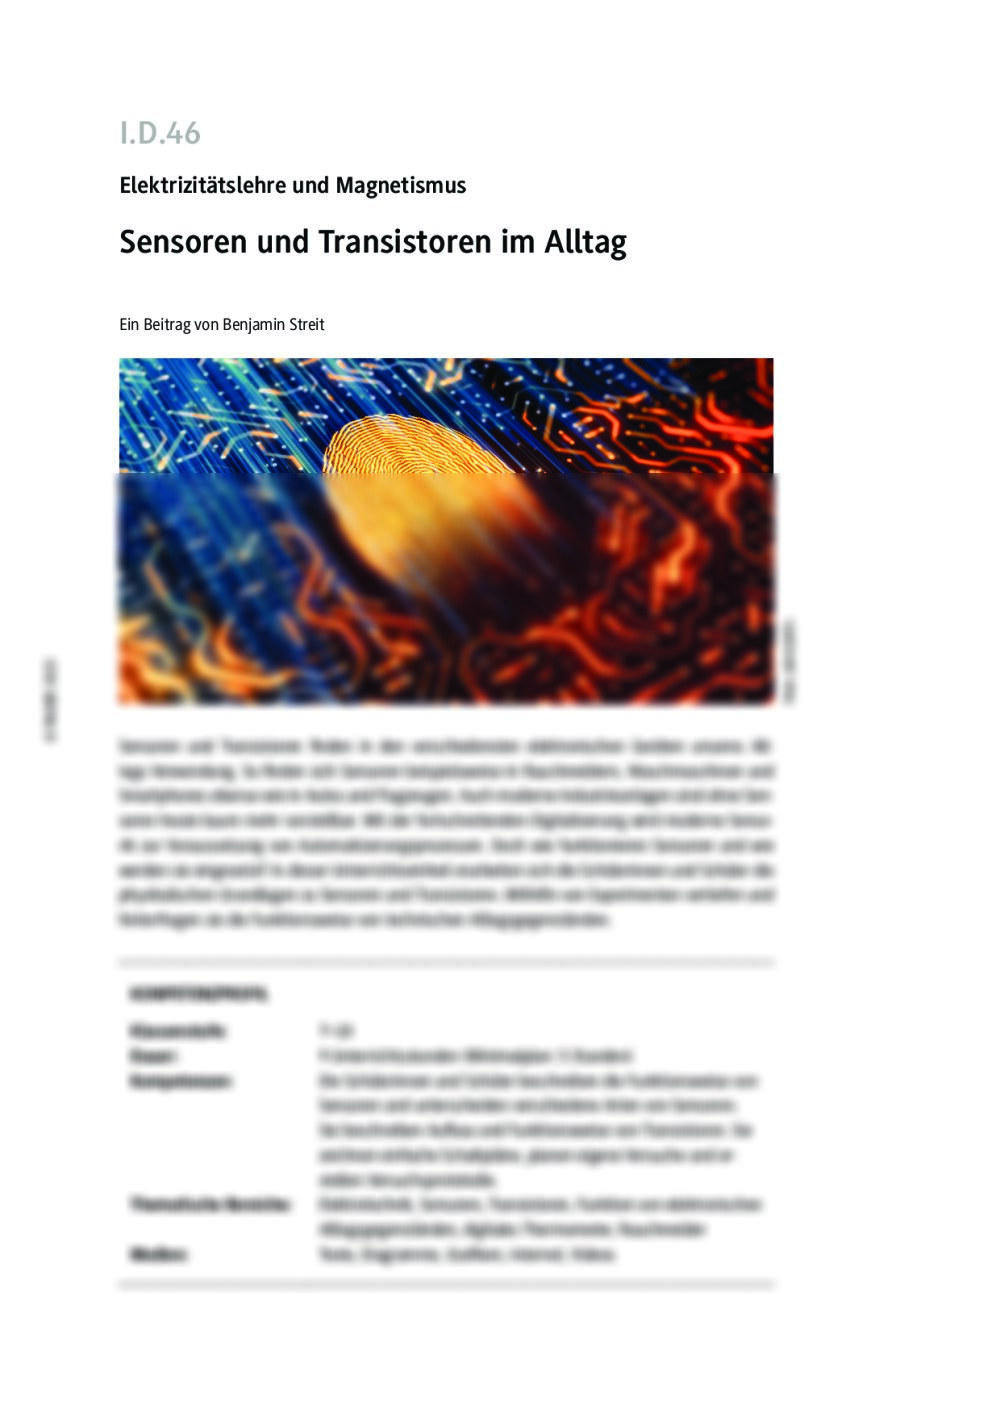 Sensoren und Transistoren im Alltag - Seite 1